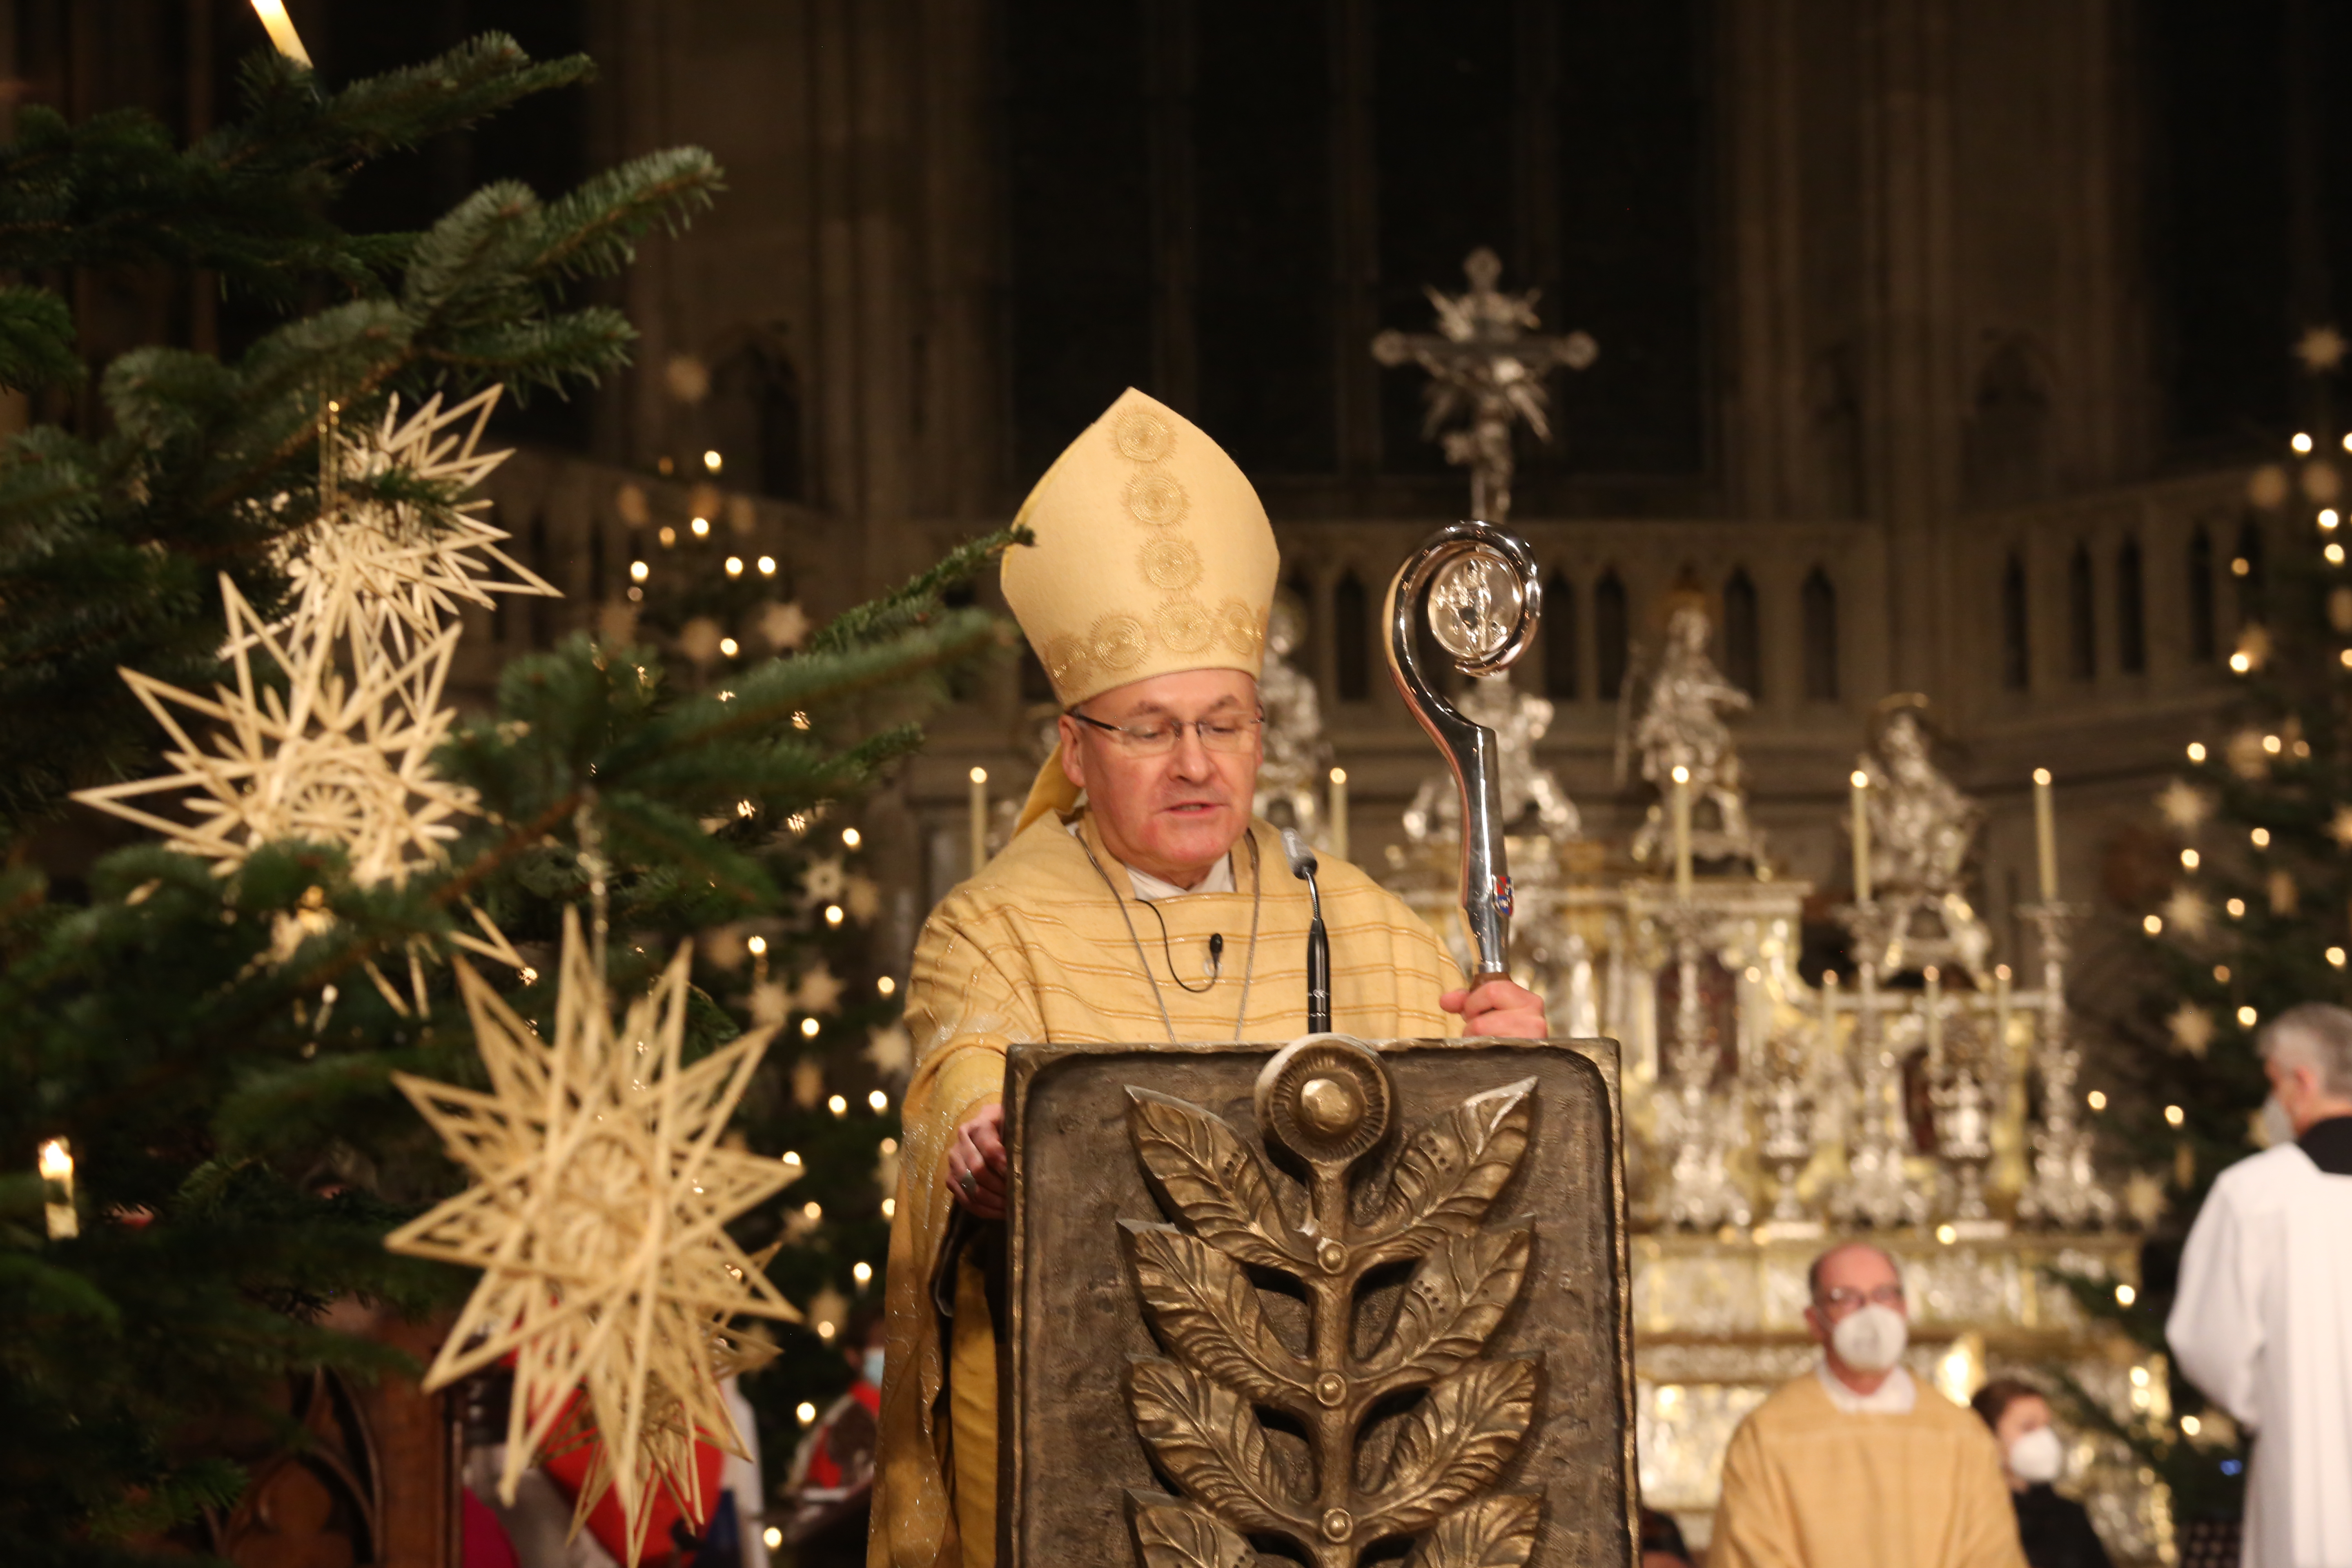 Bischof Rudolf: „Es gibt viele Beispiele menschlicher Wärme und Hilfsbereitschaft.“